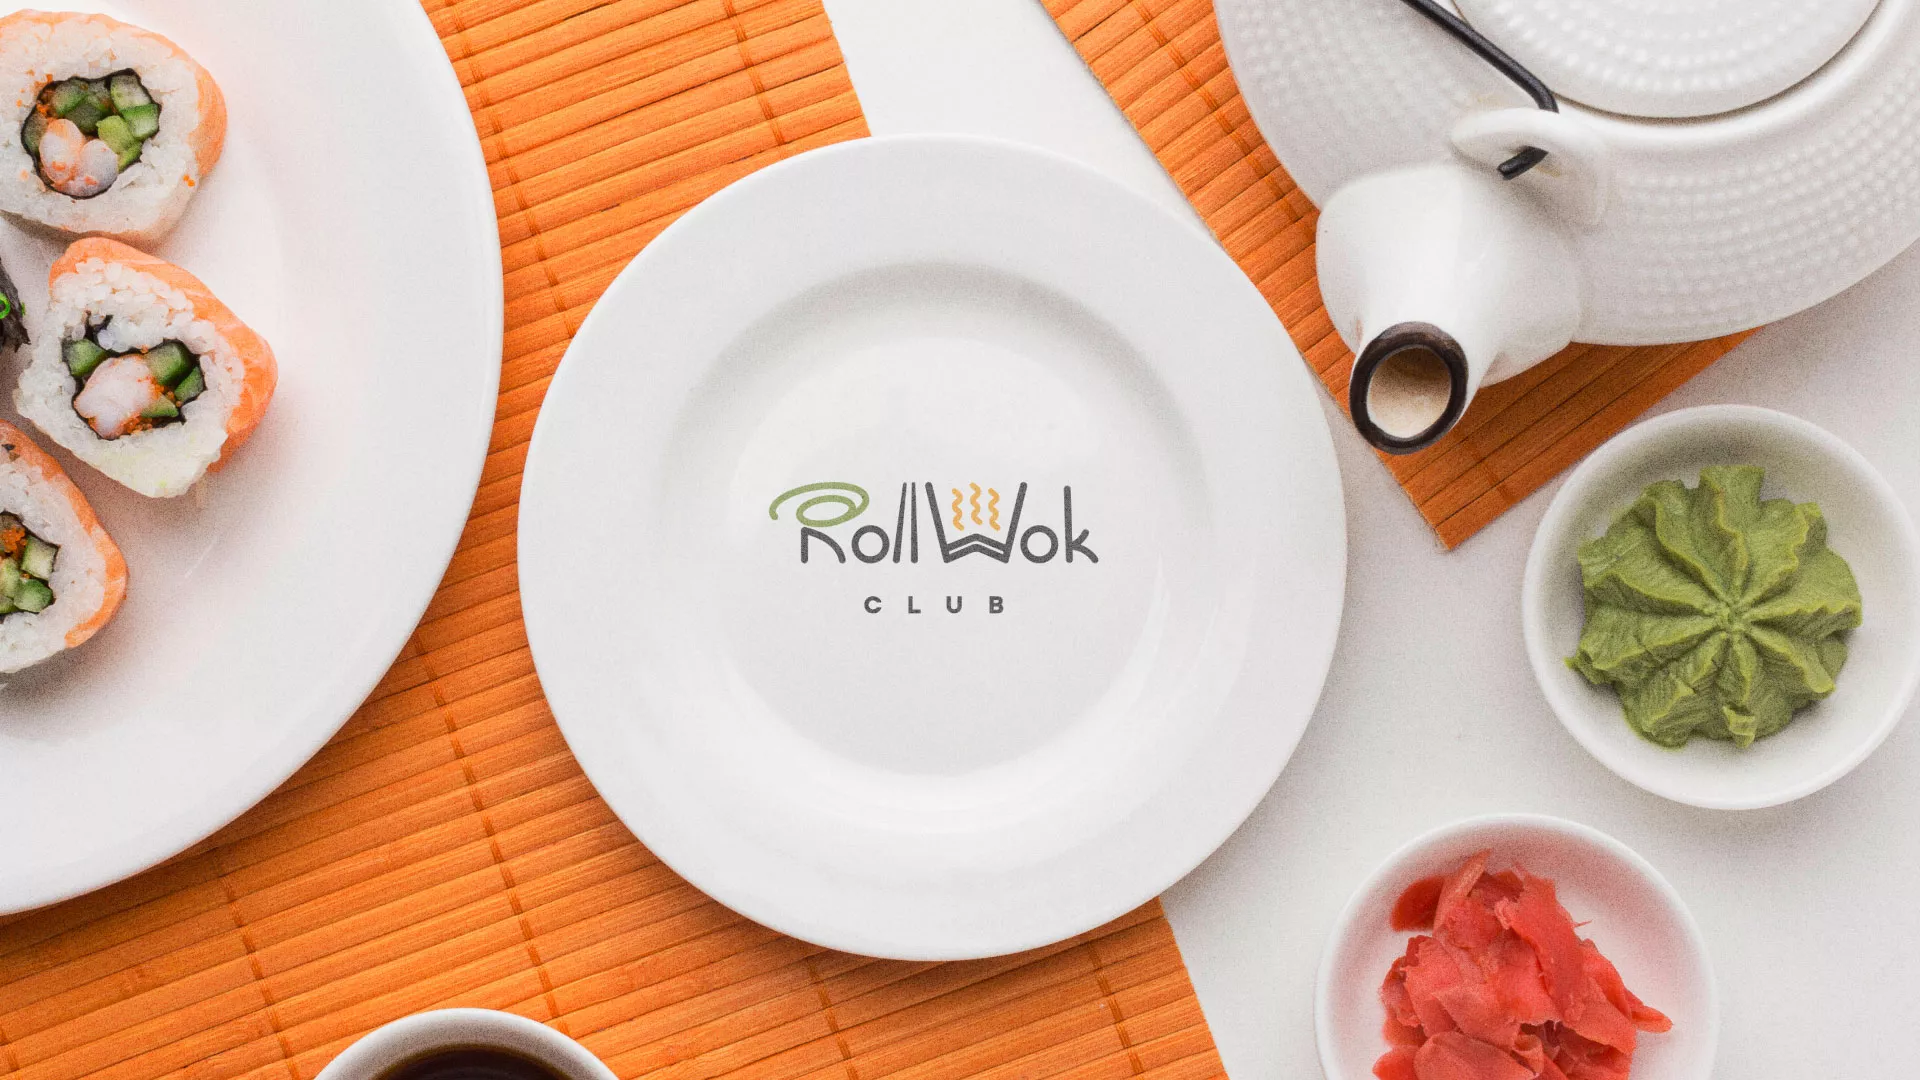 Разработка логотипа и фирменного стиля суши-бара «Roll Wok Club» в Козьмодемьянске